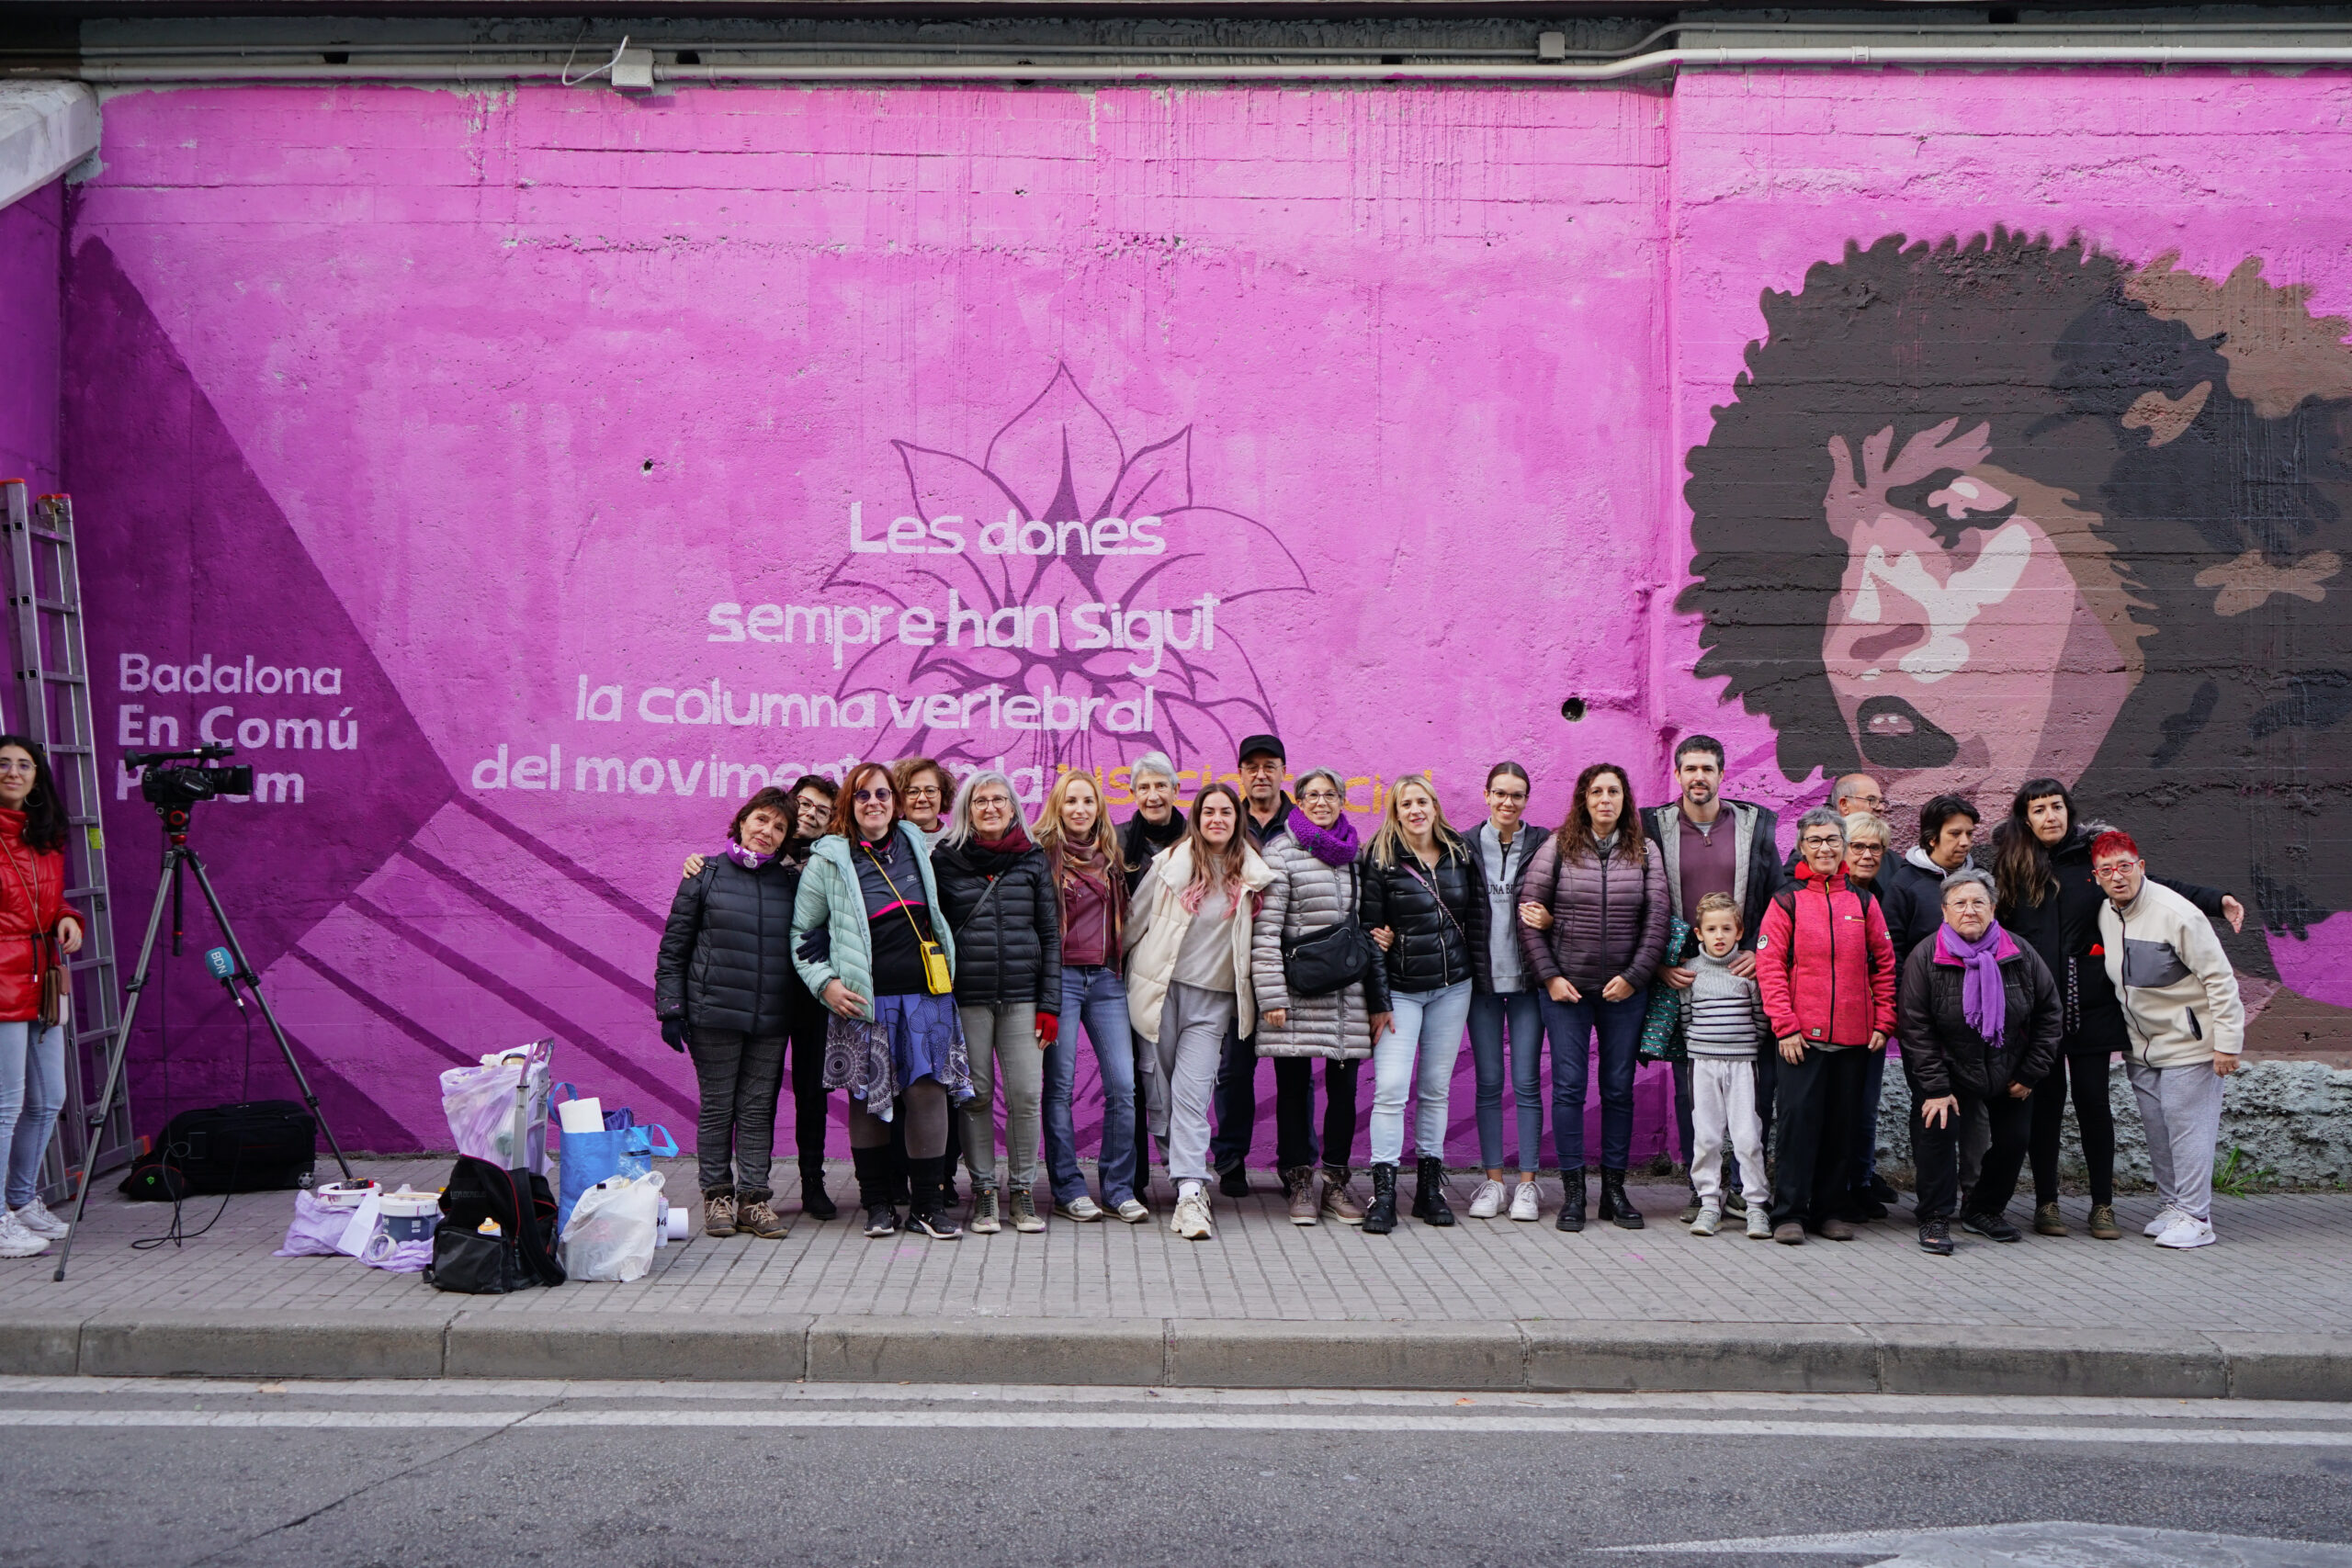 Badalona ja compta amb un mural de l’activista Angela Davis